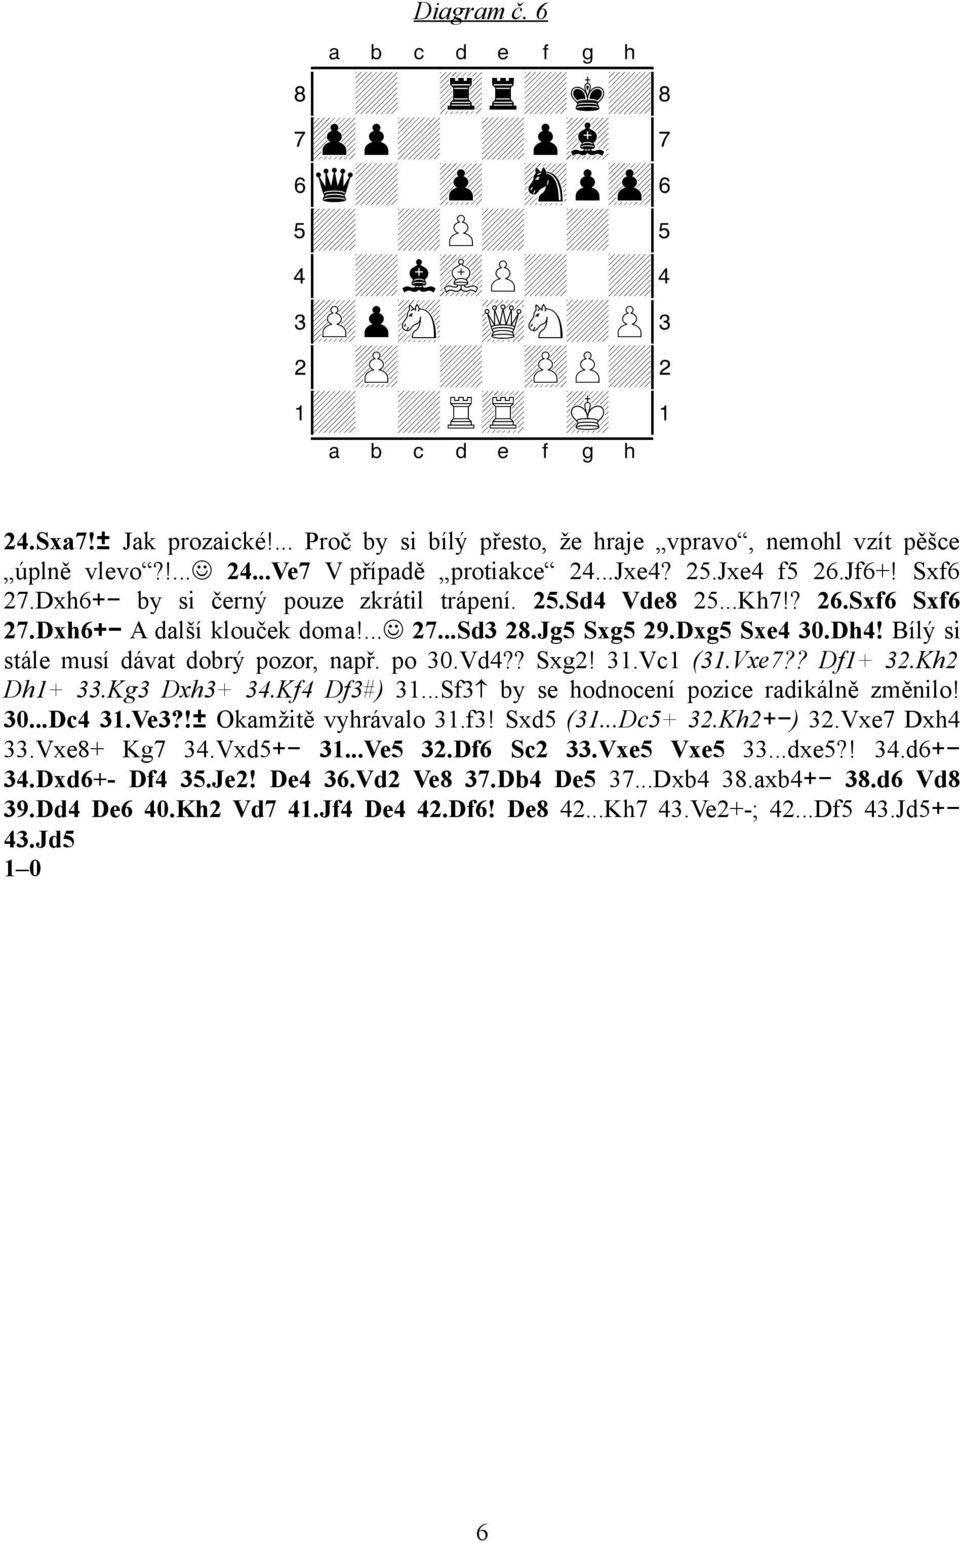 ..Kh7!? 26.Sxf6 Sxf6 27.Dxh6+- A další klouček doma!... 27...Sd3 28.Jg5 Sxg5 29.Dxg5 Sxe4 30.Dh4! Bílý si stále musí dávat dobrý pozor, např. po 30.Vd4?? Sxg2! 31.Vc1 (31.Vxe7?? Df1+ 32.Kh2 Dh1+ 33.